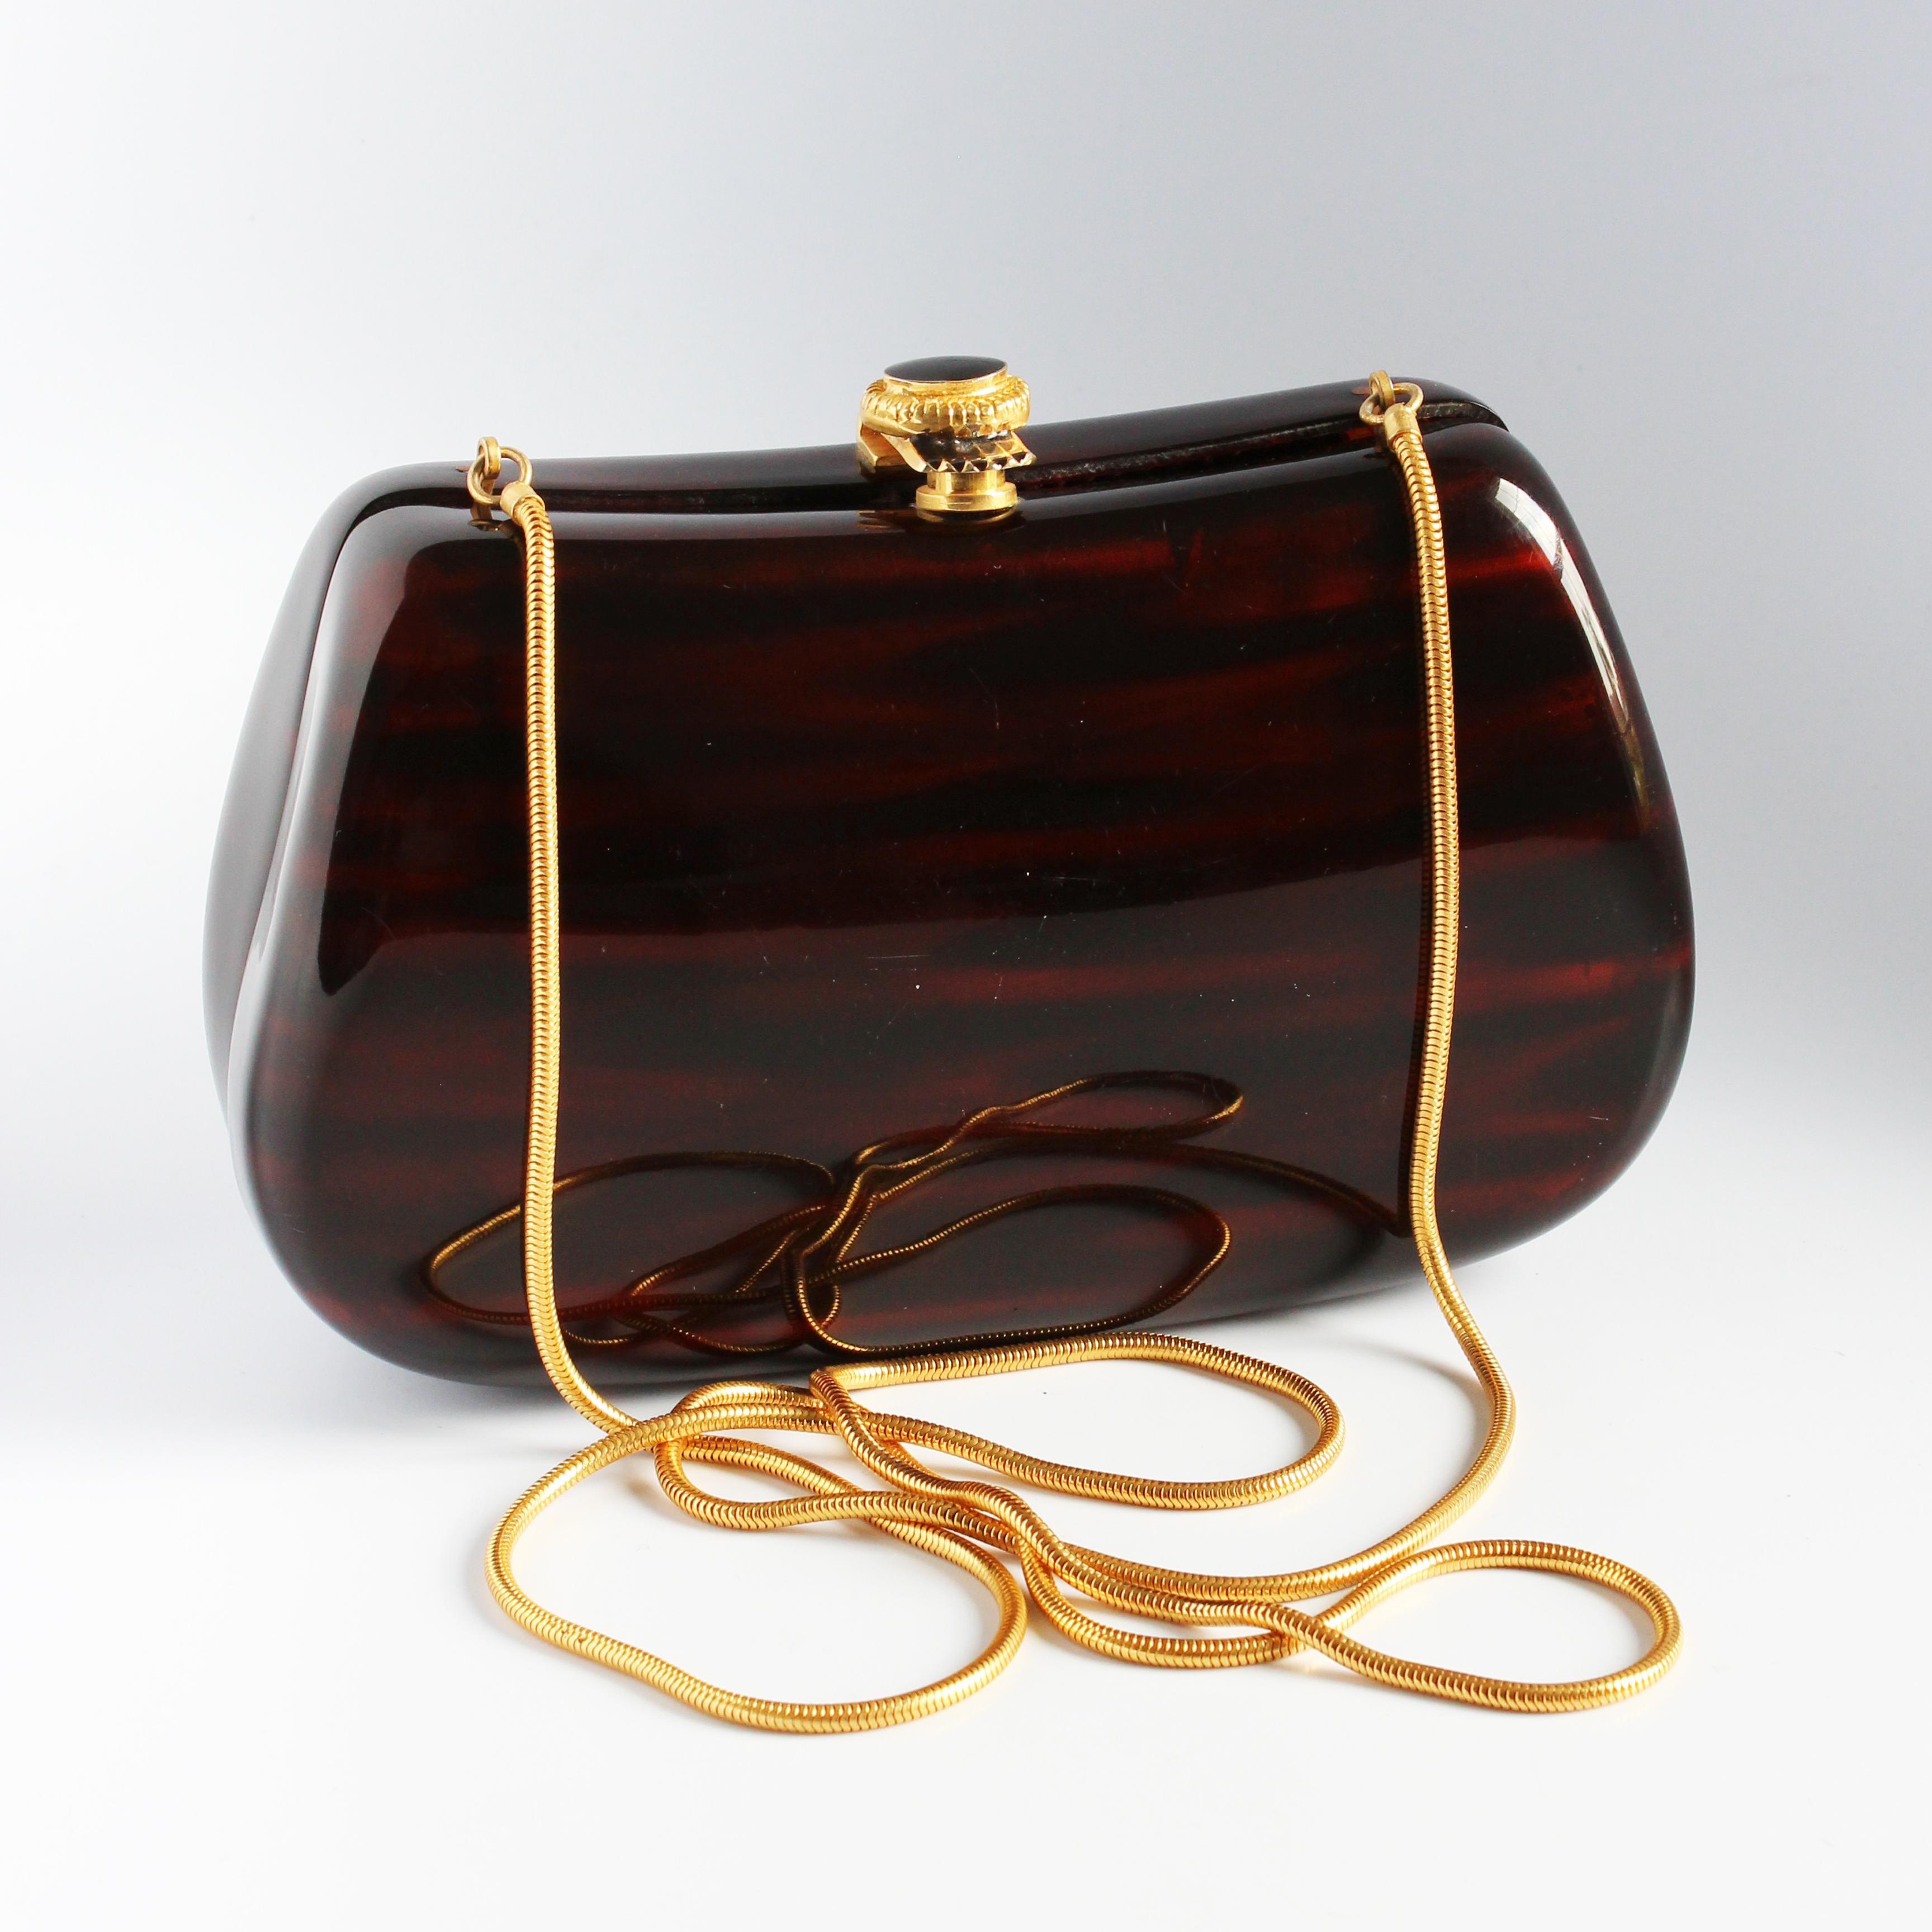 Vintage-Abendtasche oder Minaudière, hergestellt für Saks Fifth Avenue, wahrscheinlich in den späten 1960er Jahren.  Sie ist aus poliertem Harz in Holzoptik gefertigt und verfügt über einen dekorativen Verschluss aus goldenem Metall und Emaille